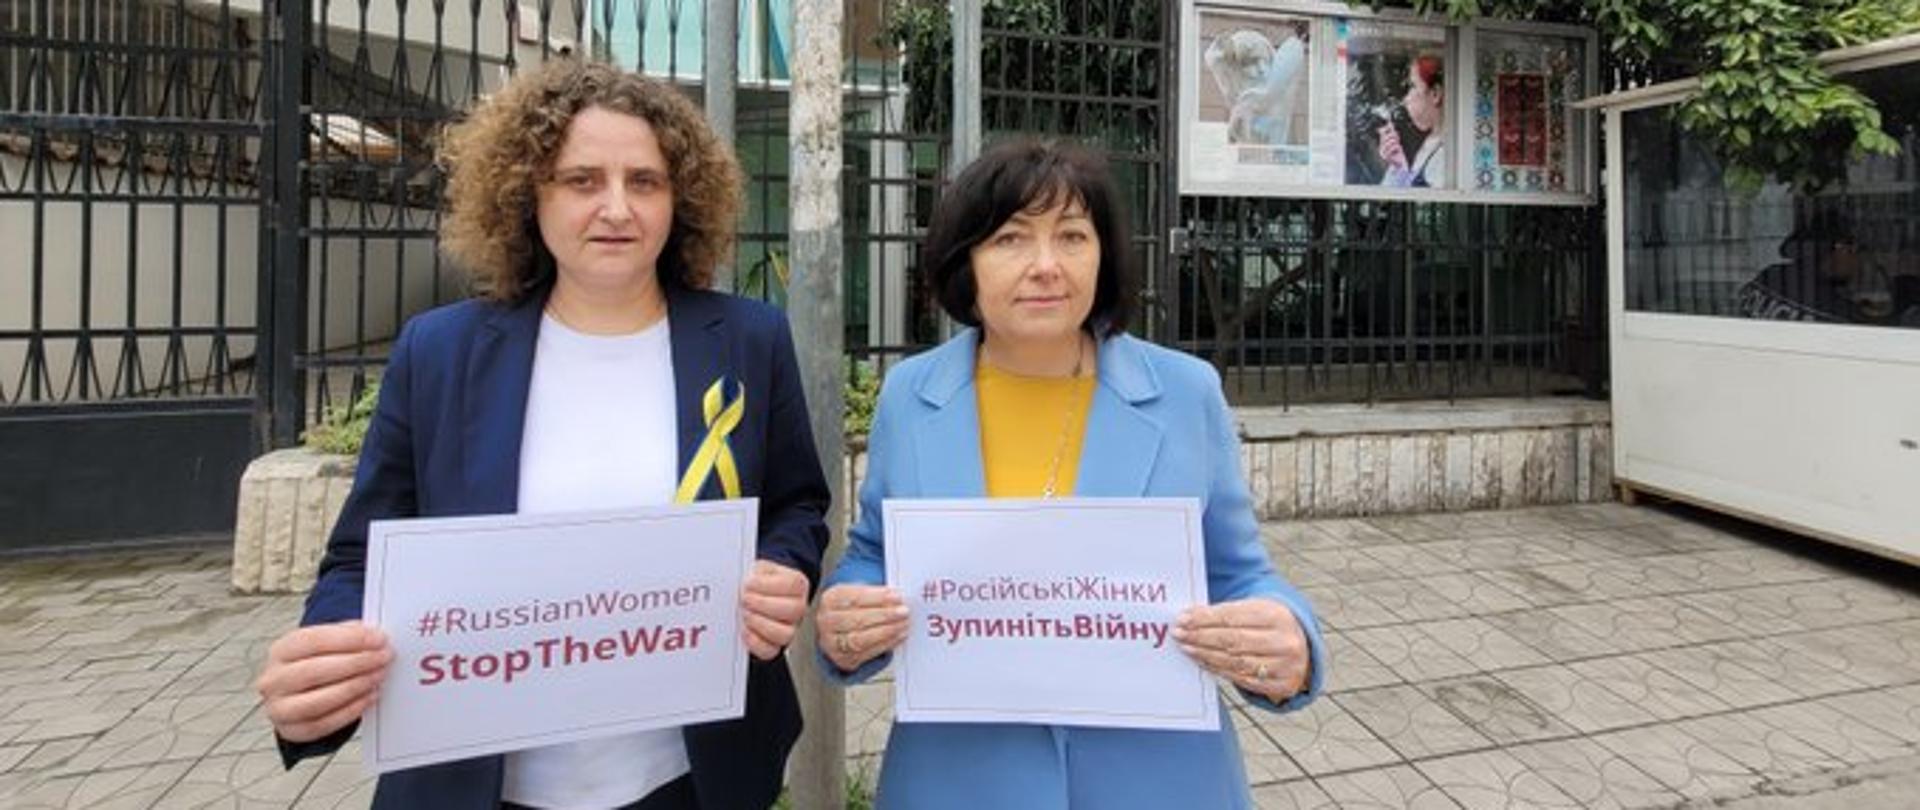 russian women stop the war